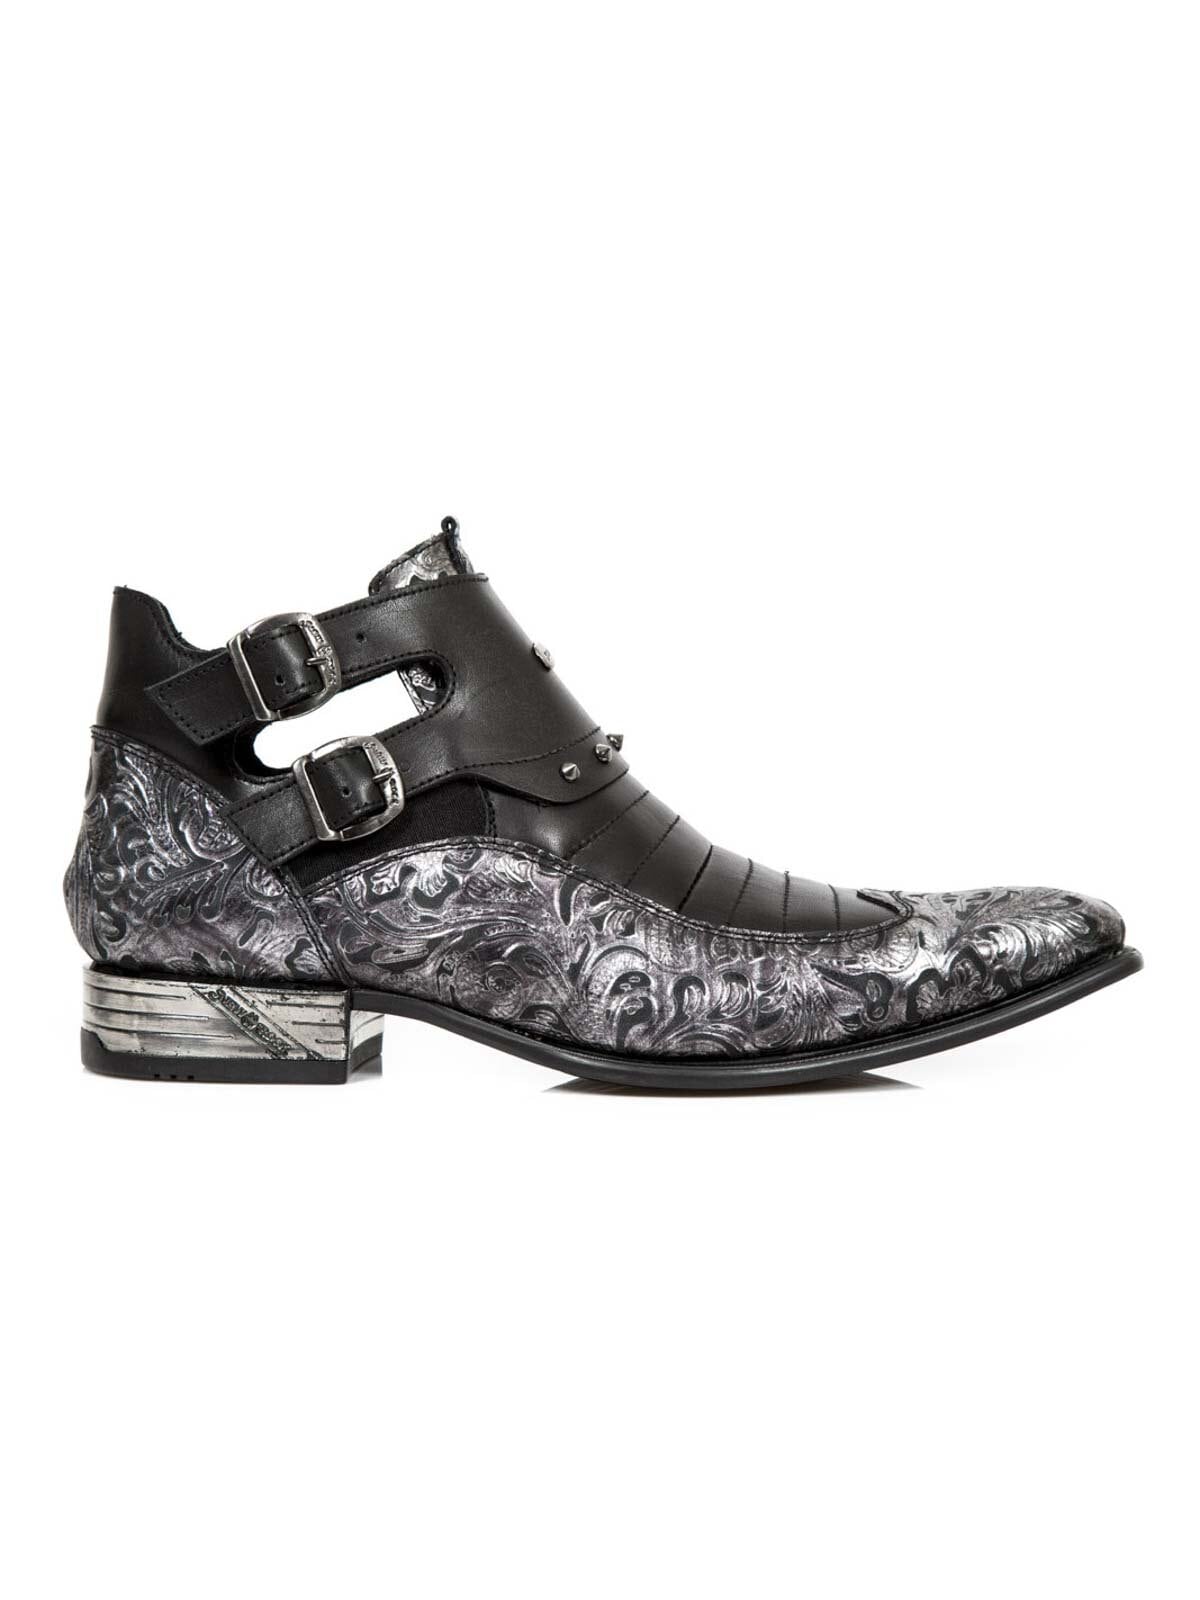 Flanagan New Rock Boots - Svart/Sølv